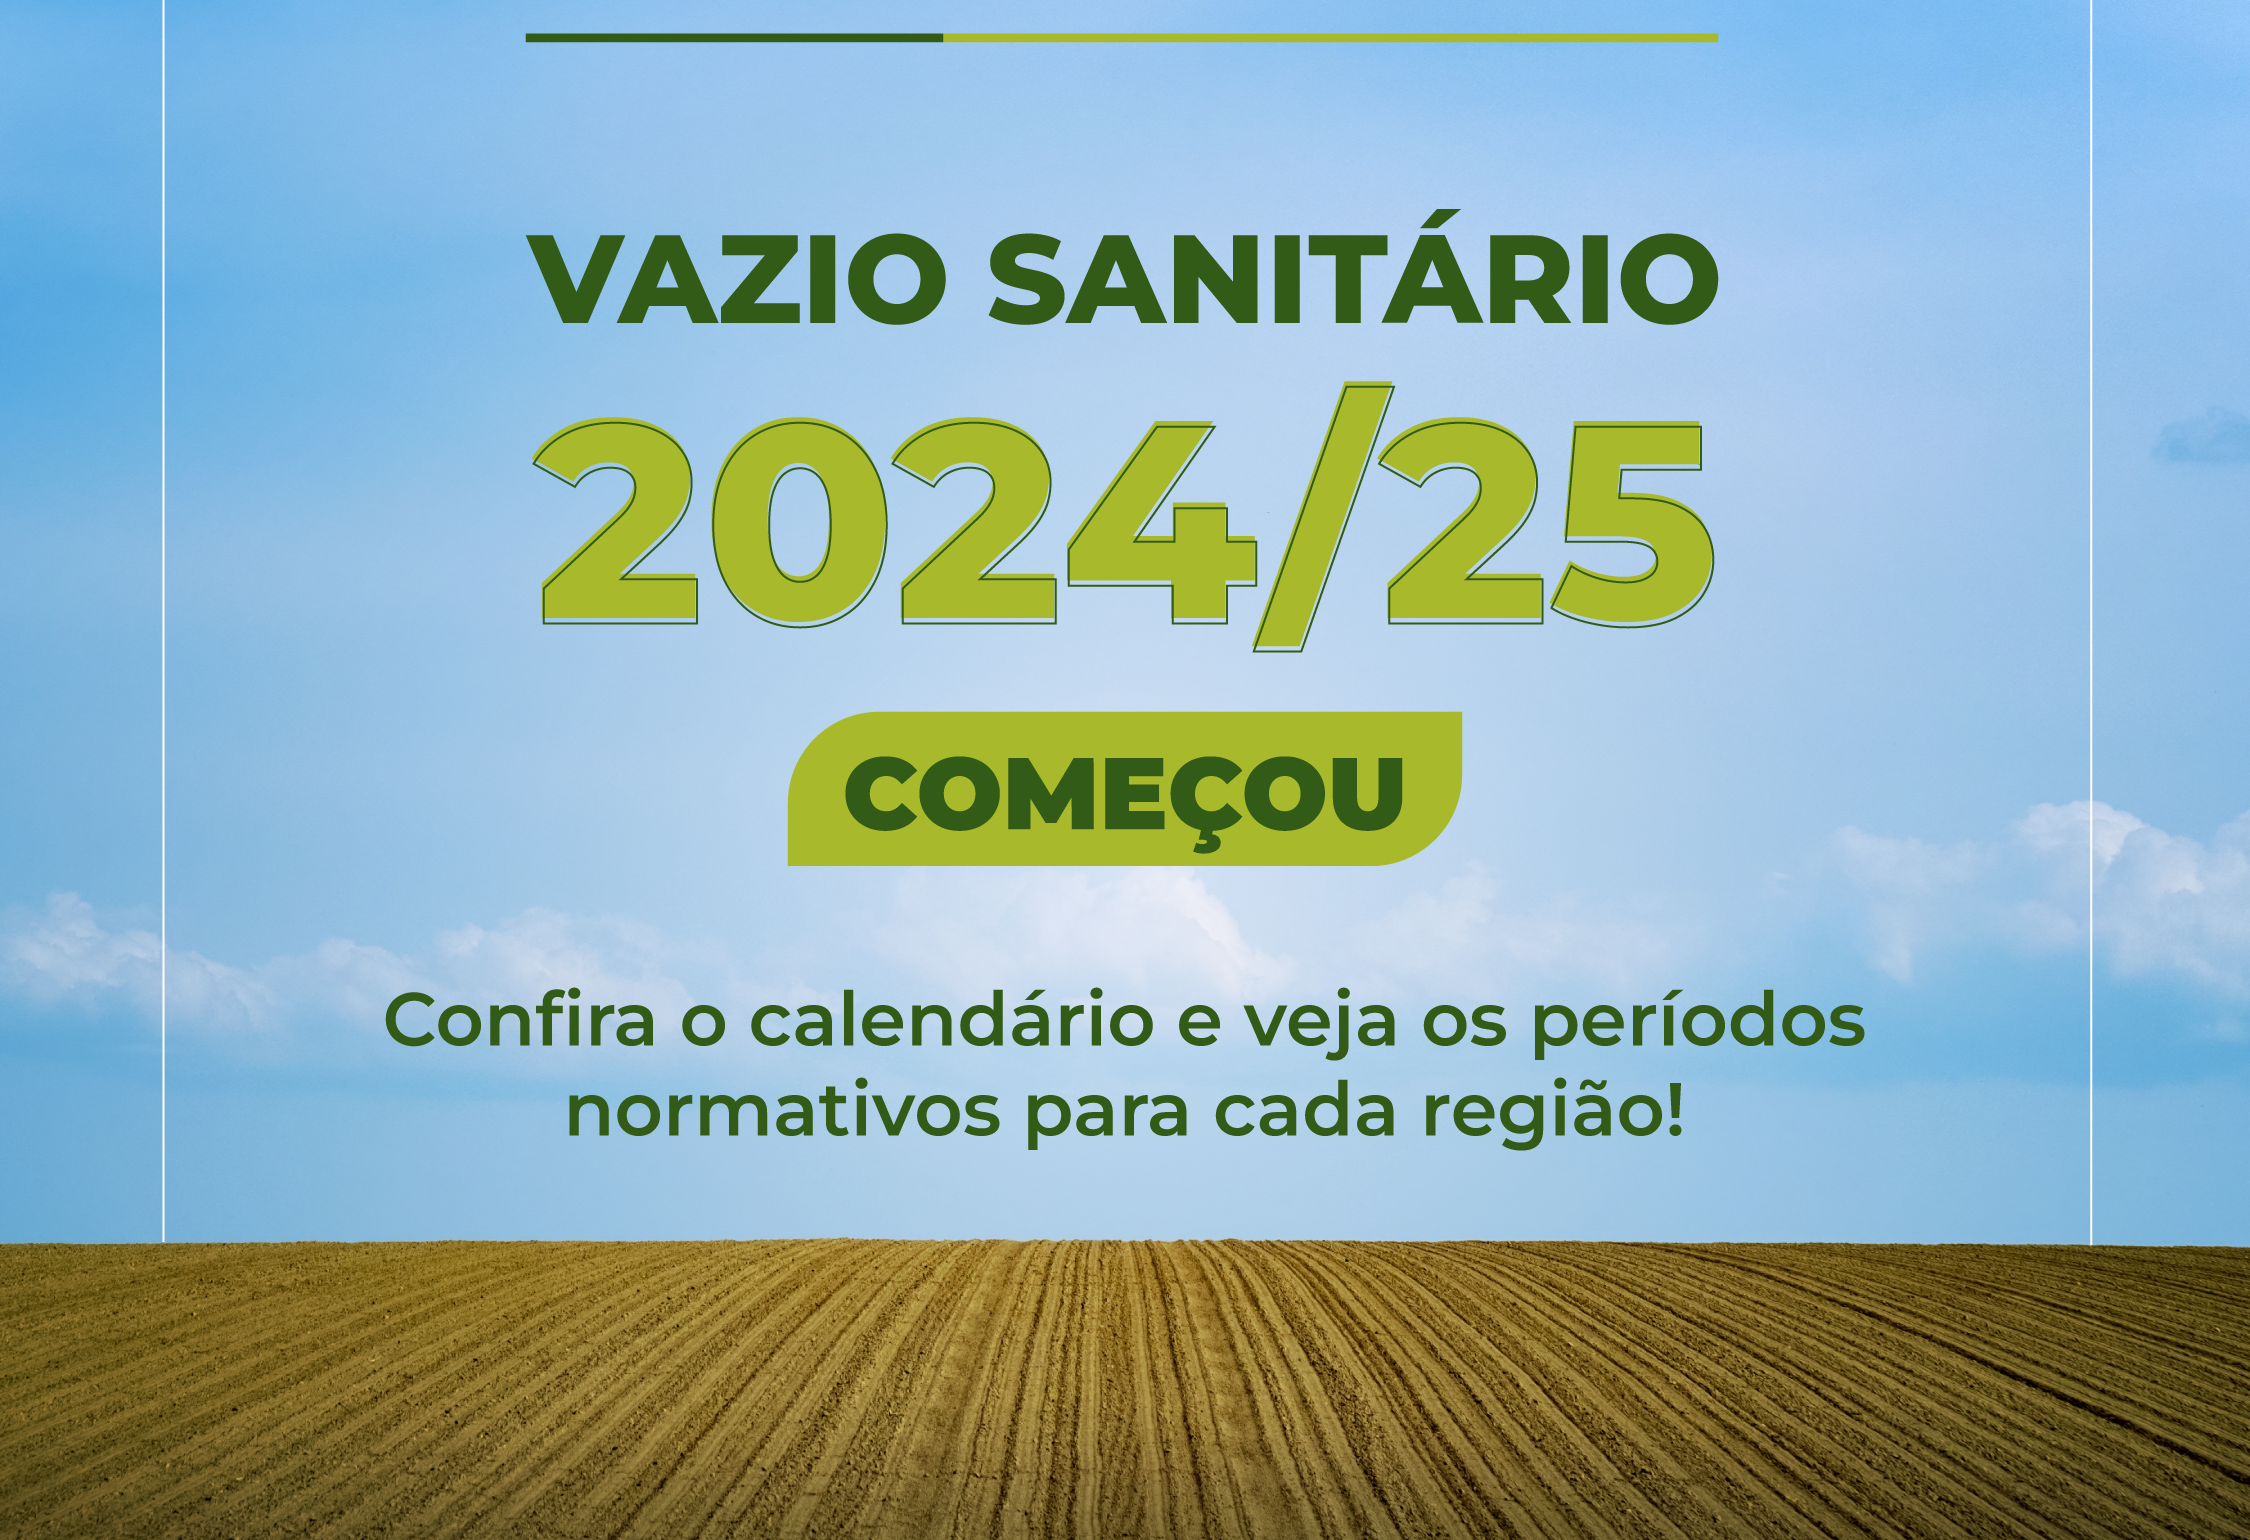 Vazio Sanitário da soja para 2024